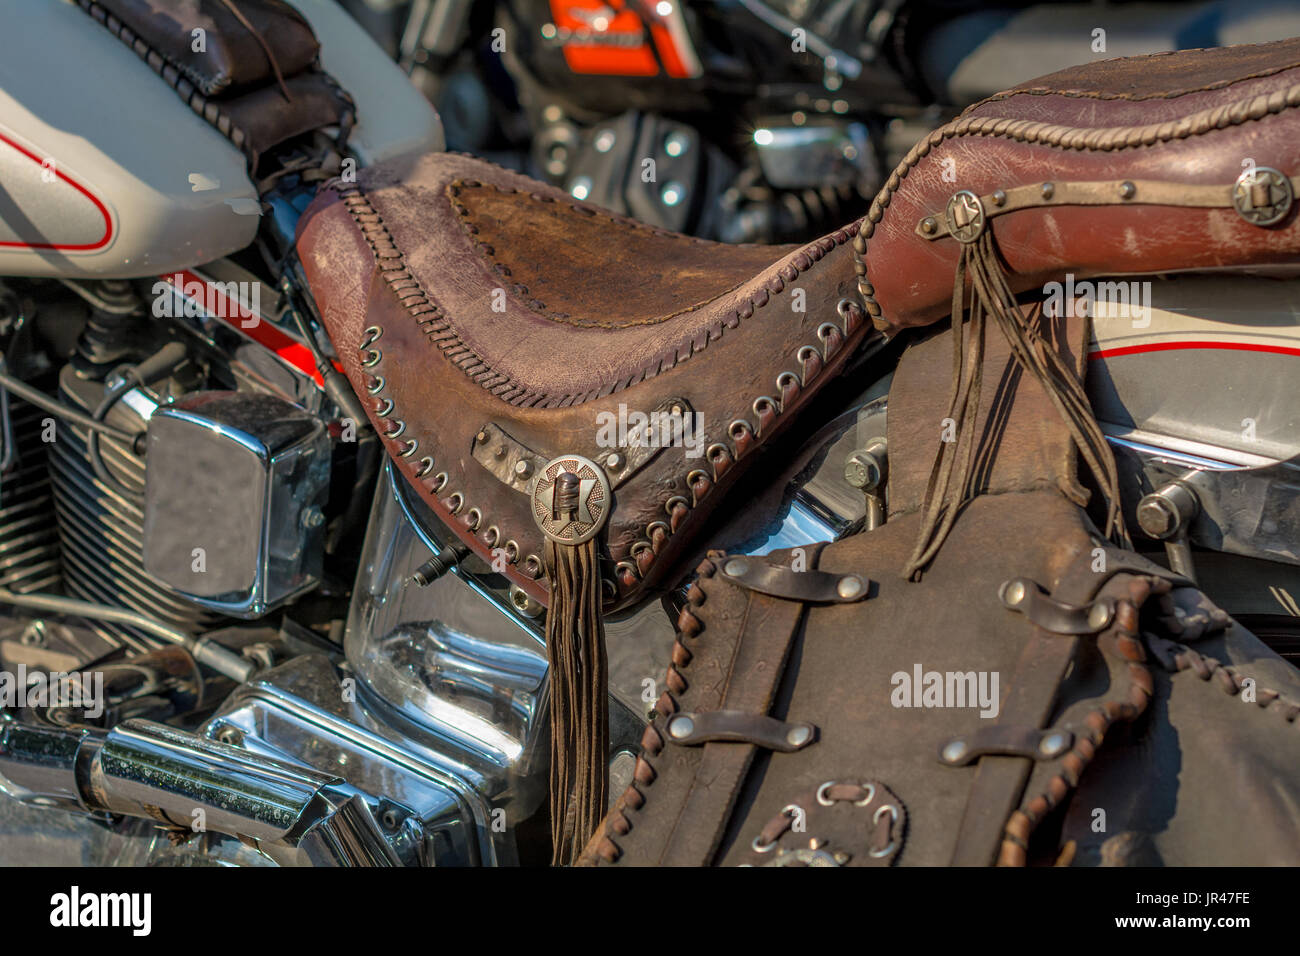 https://c8.alamy.com/comp/JR47FE/a-typical-biker-leather-bag-motorbike-accessories-vintage-effect-filter-JR47FE.jpg